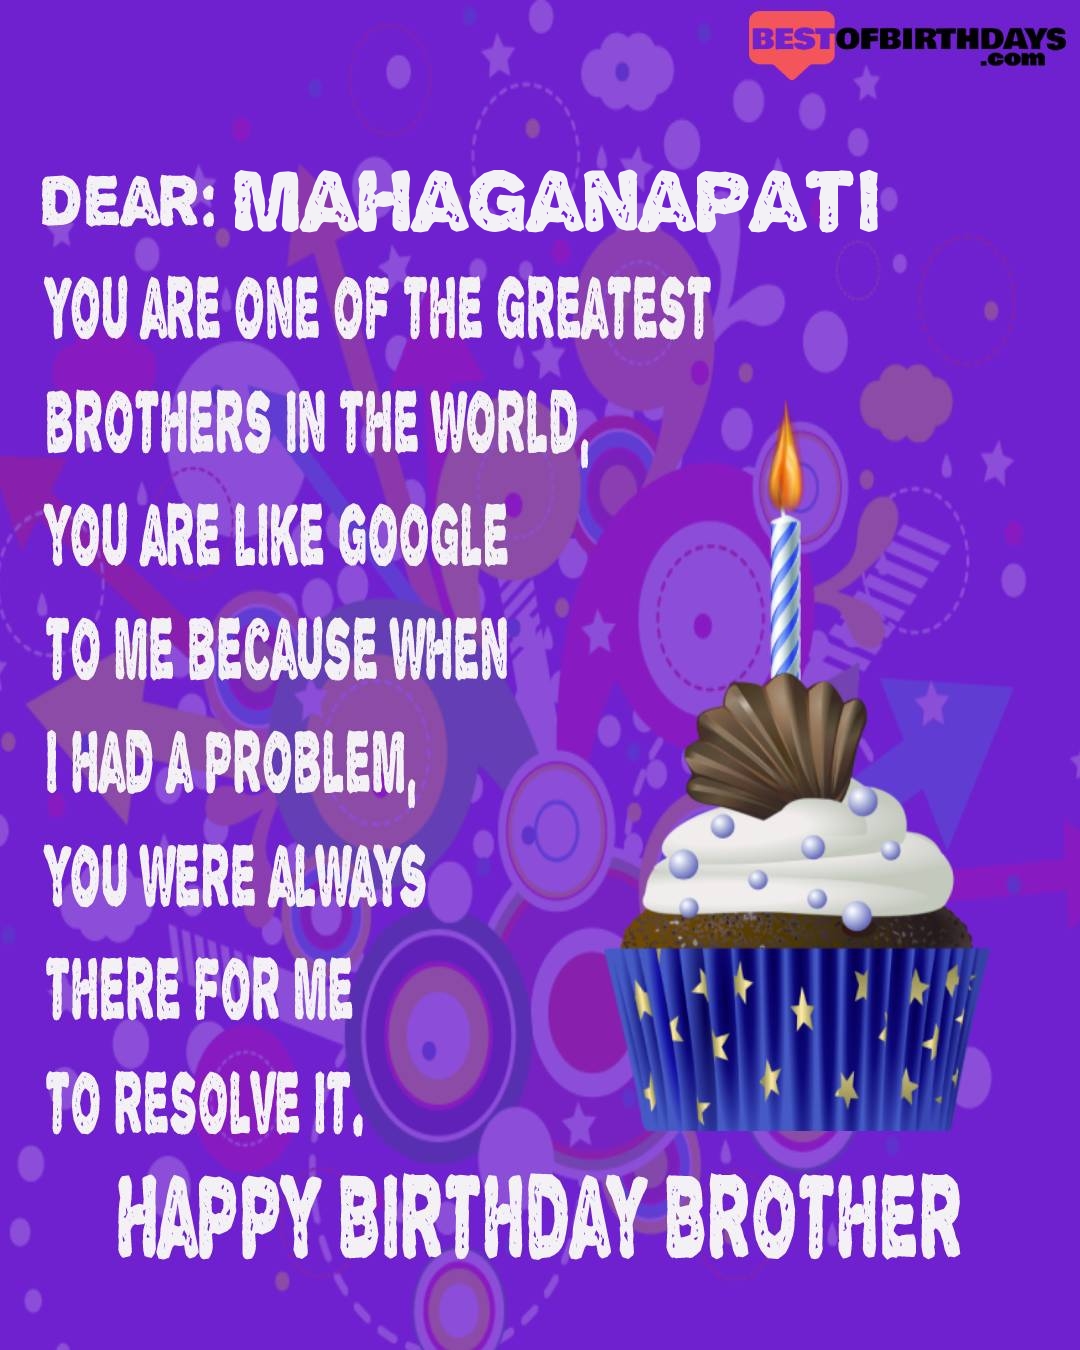 Happy birthday mahaganapati bhai brother bro